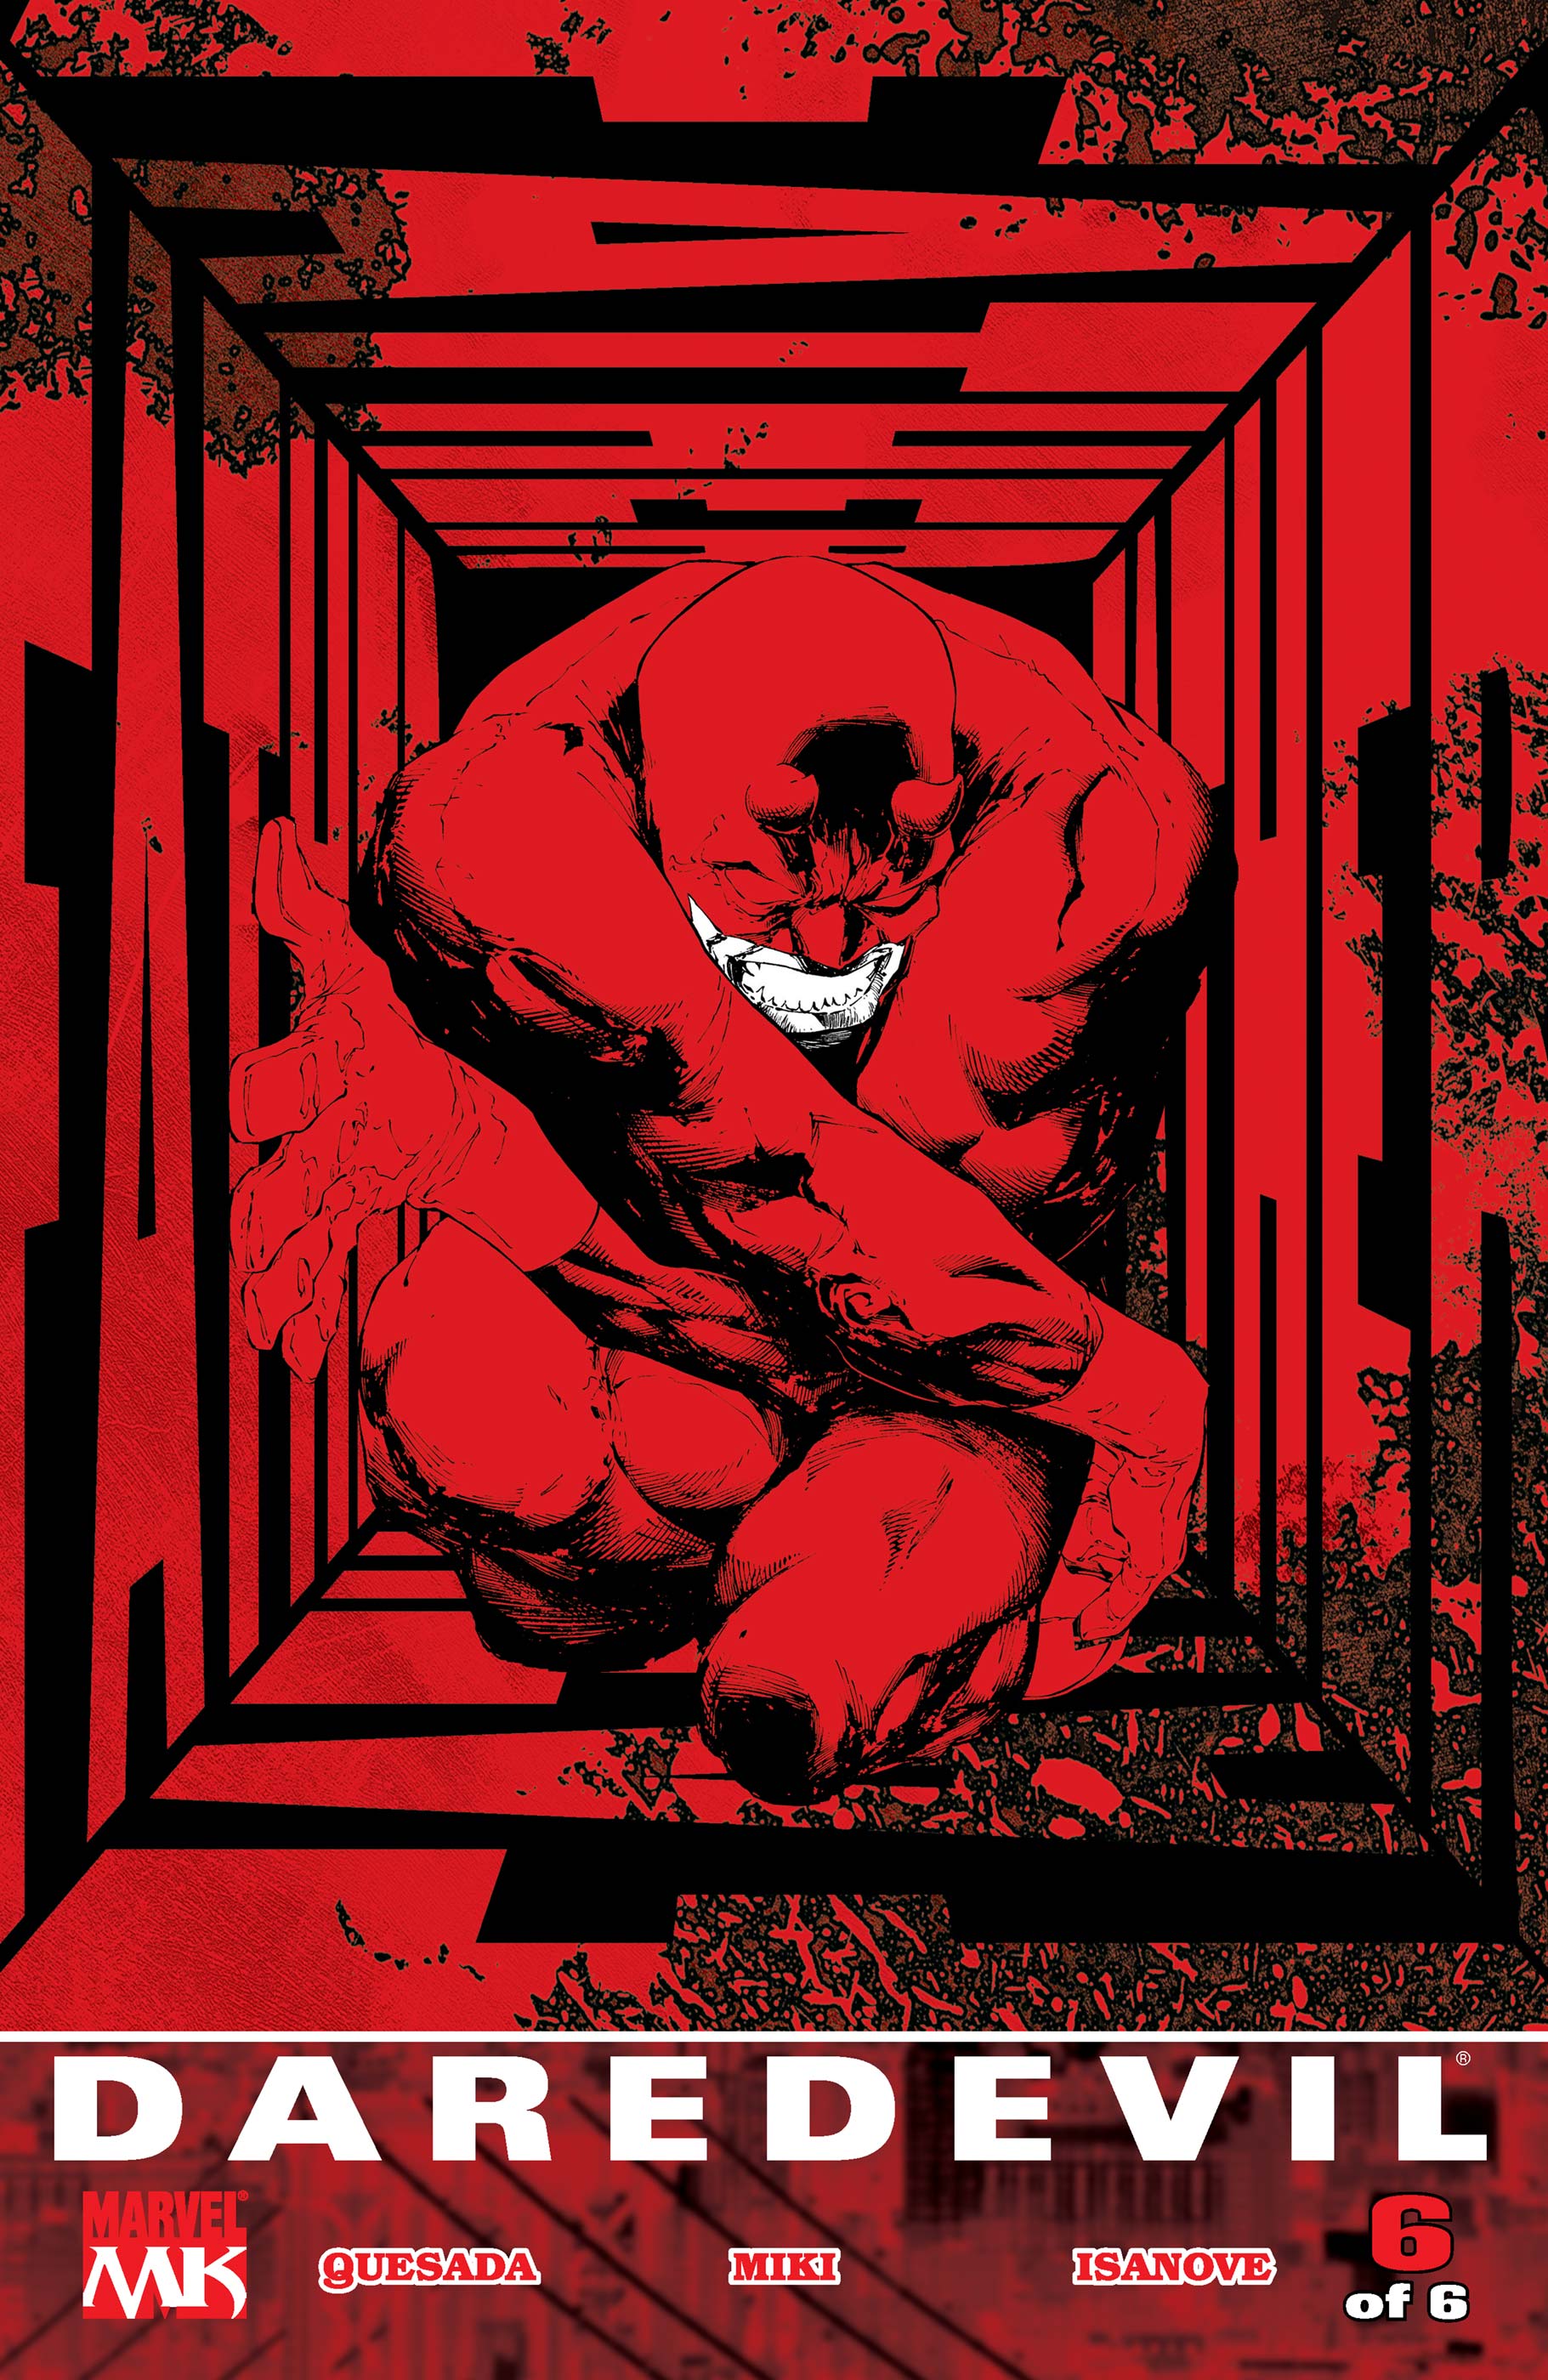 Daredevil: Father (2004) #6